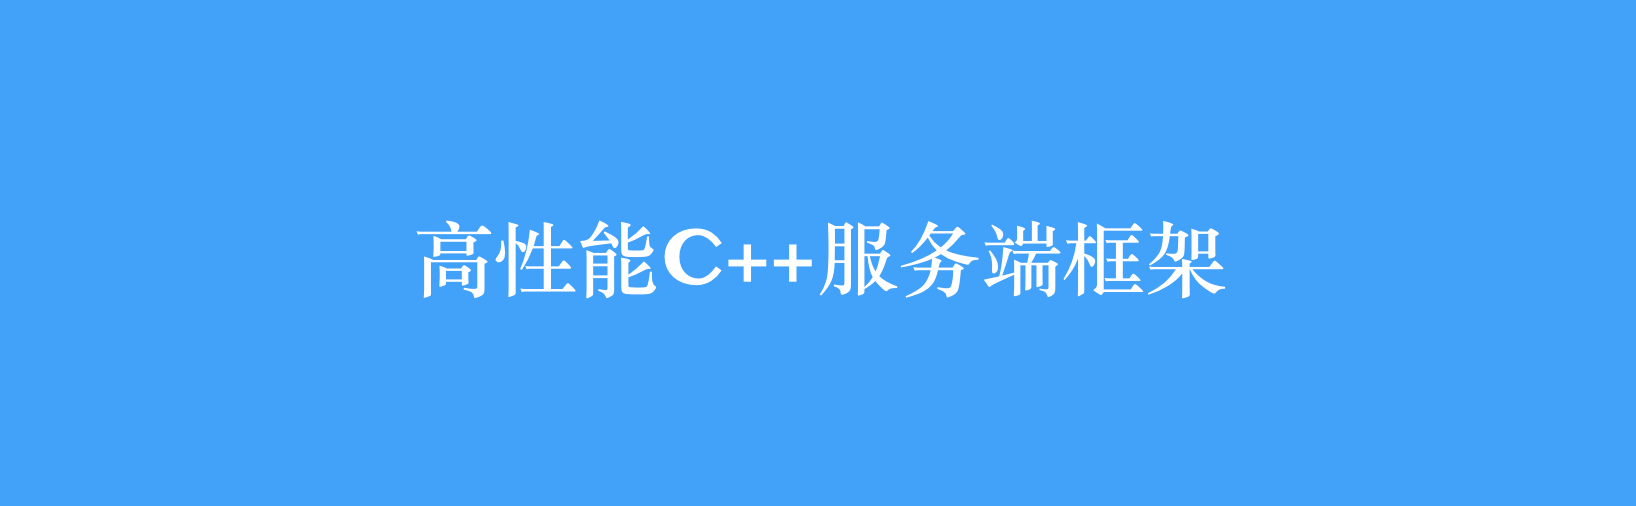 高性能C++服务端框架